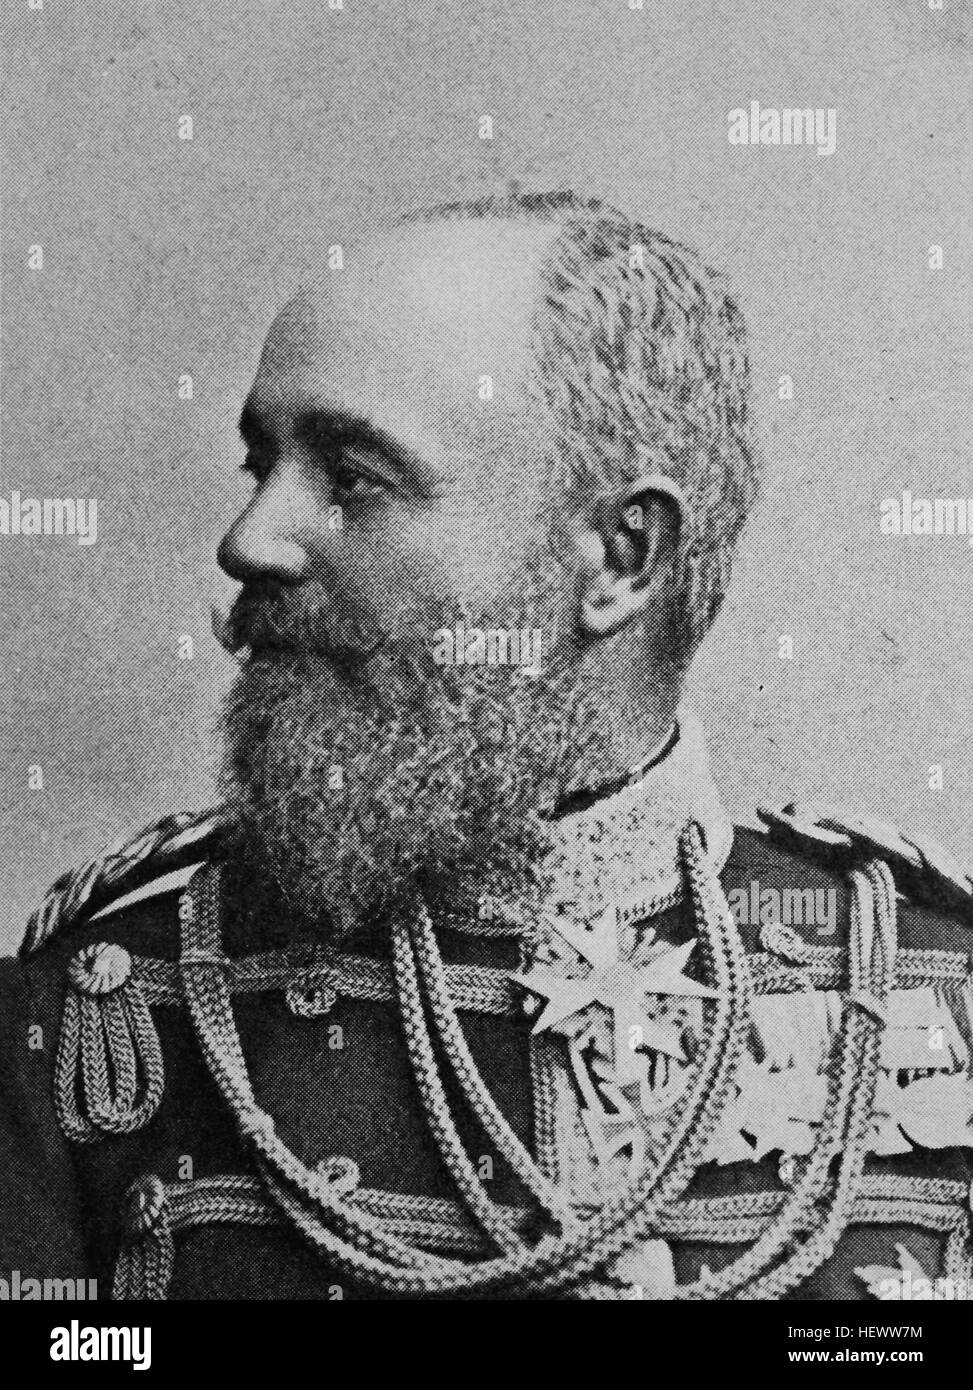 Georg, Prince de Schaumbourg-lippe, 10 octobre 1846 - 29 avril 1911, chef de la petite principauté de Schaumbourg-lippe, photo de 1895, l'amélioration numérique Banque D'Images